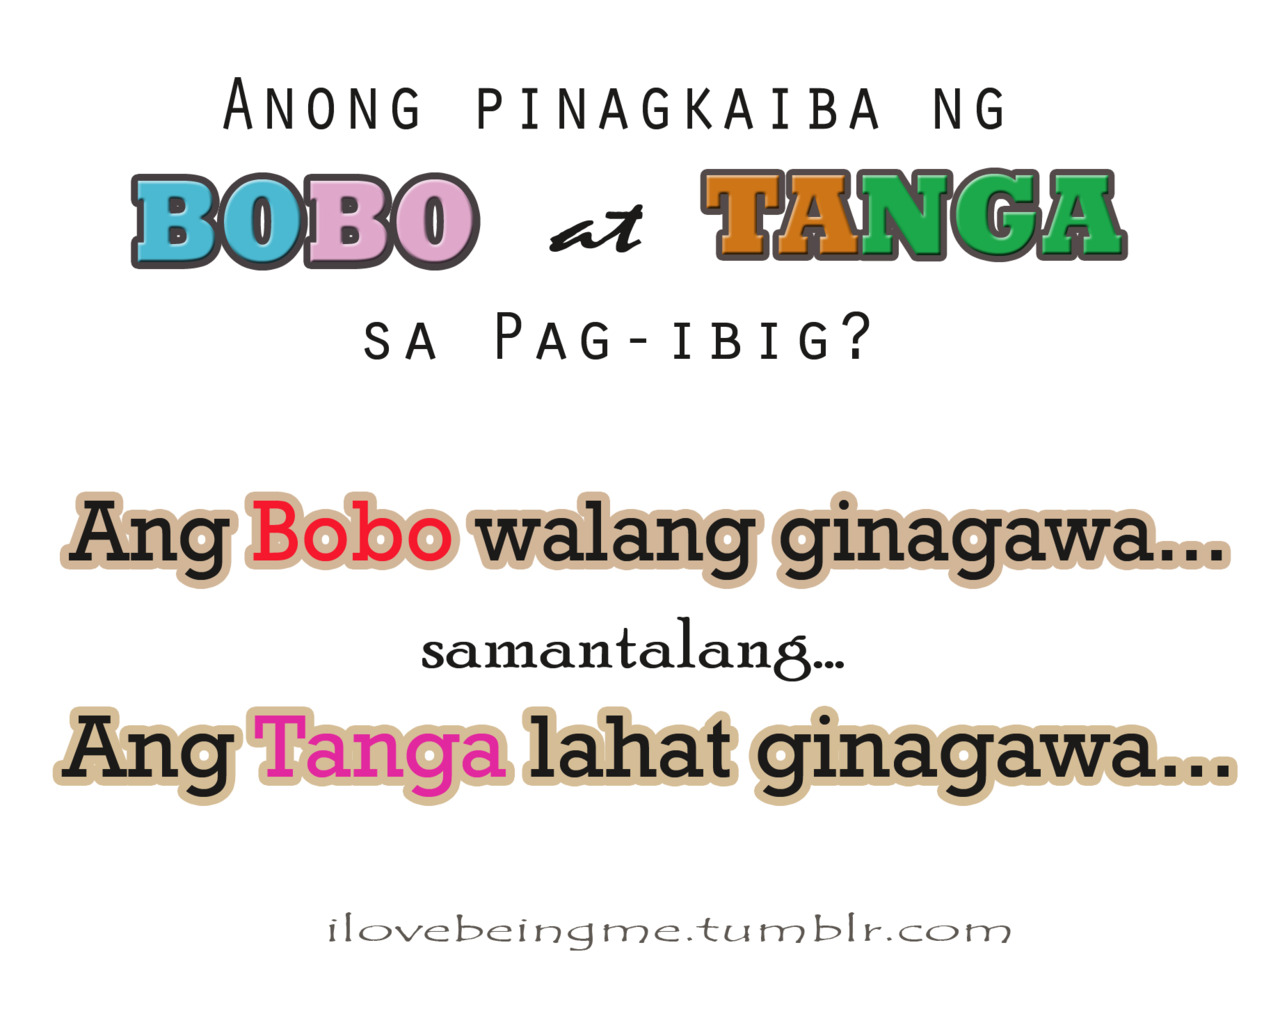 Kaibigan Quotes Tagalog Patama. QuotesGram